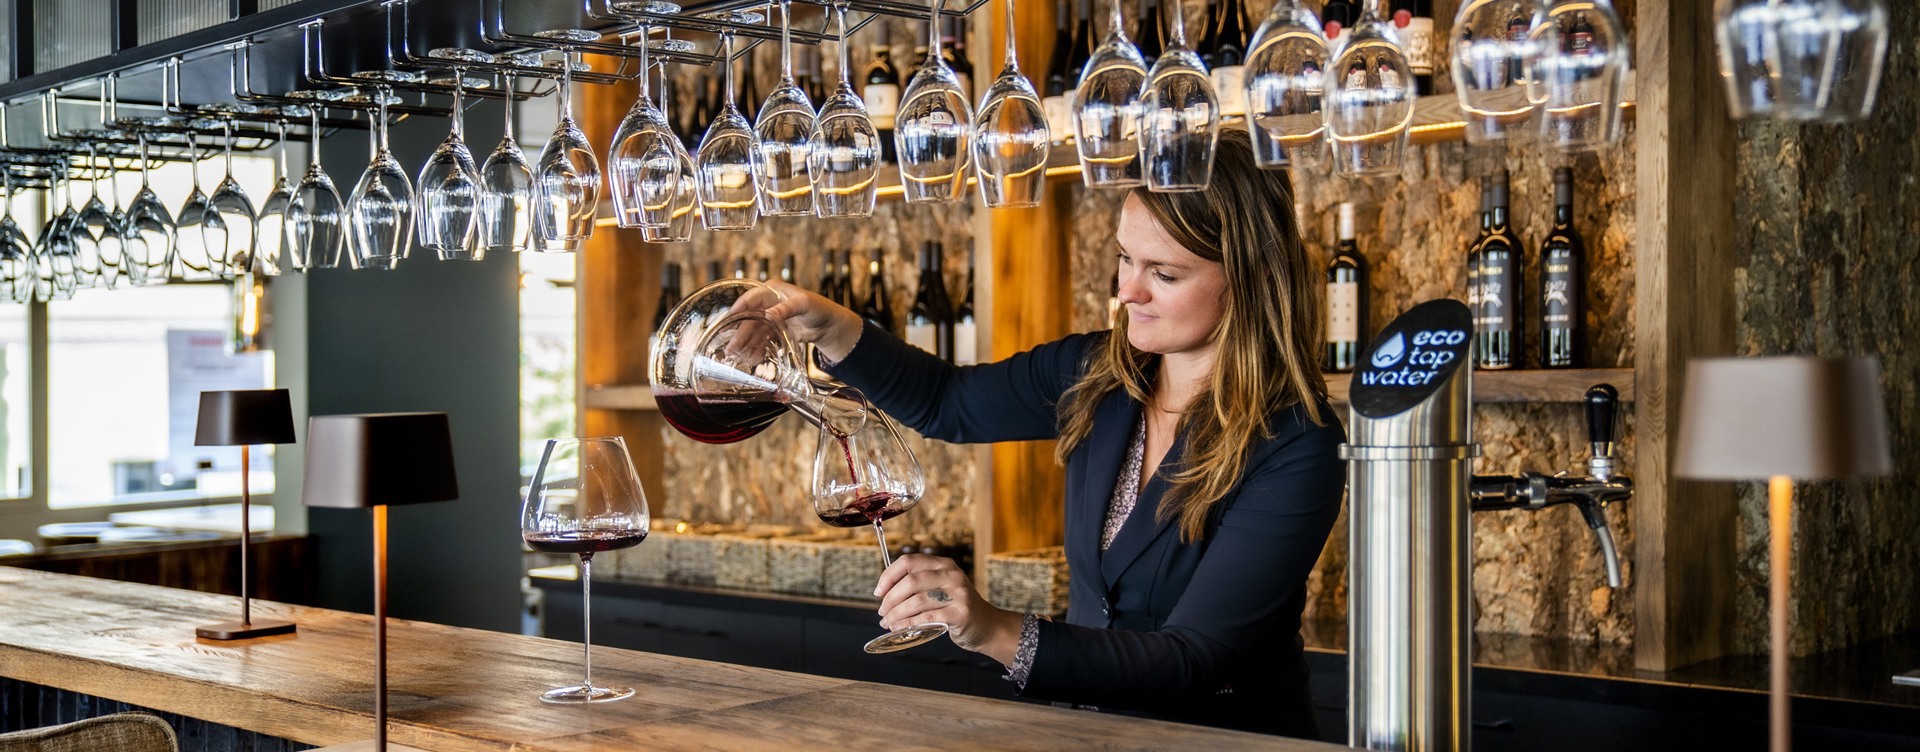 Geniet van bruisende wijnen en een fijne overnachting
in hét wijnhotel van Nederland